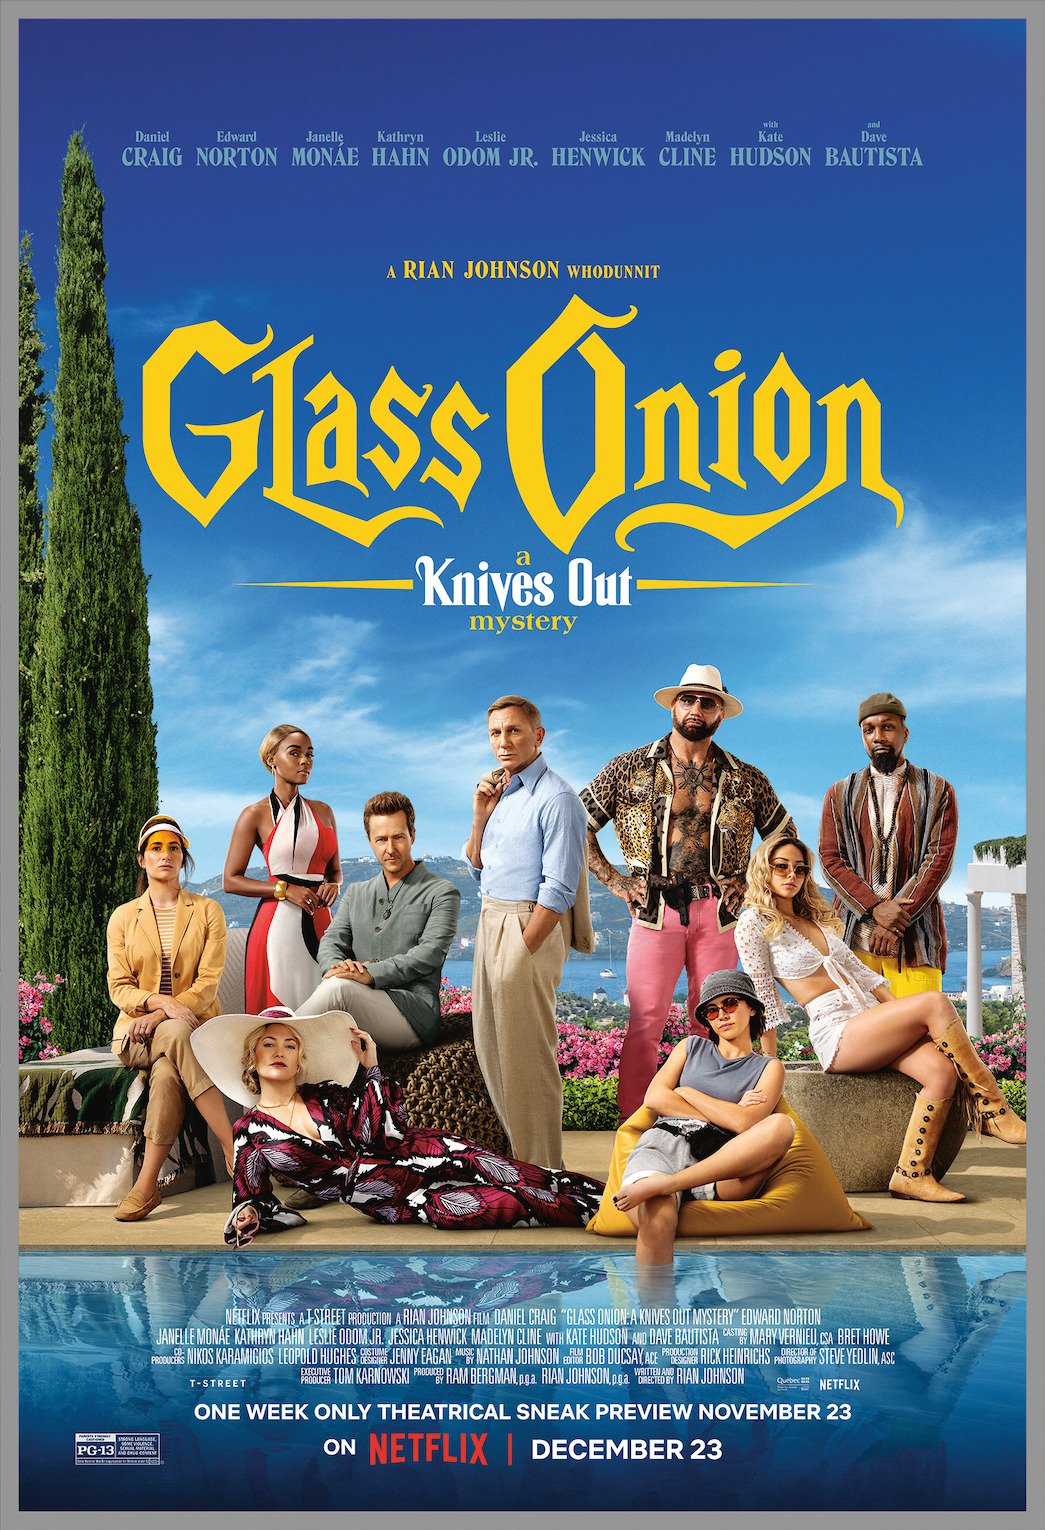 Glass Onion image © Netflix